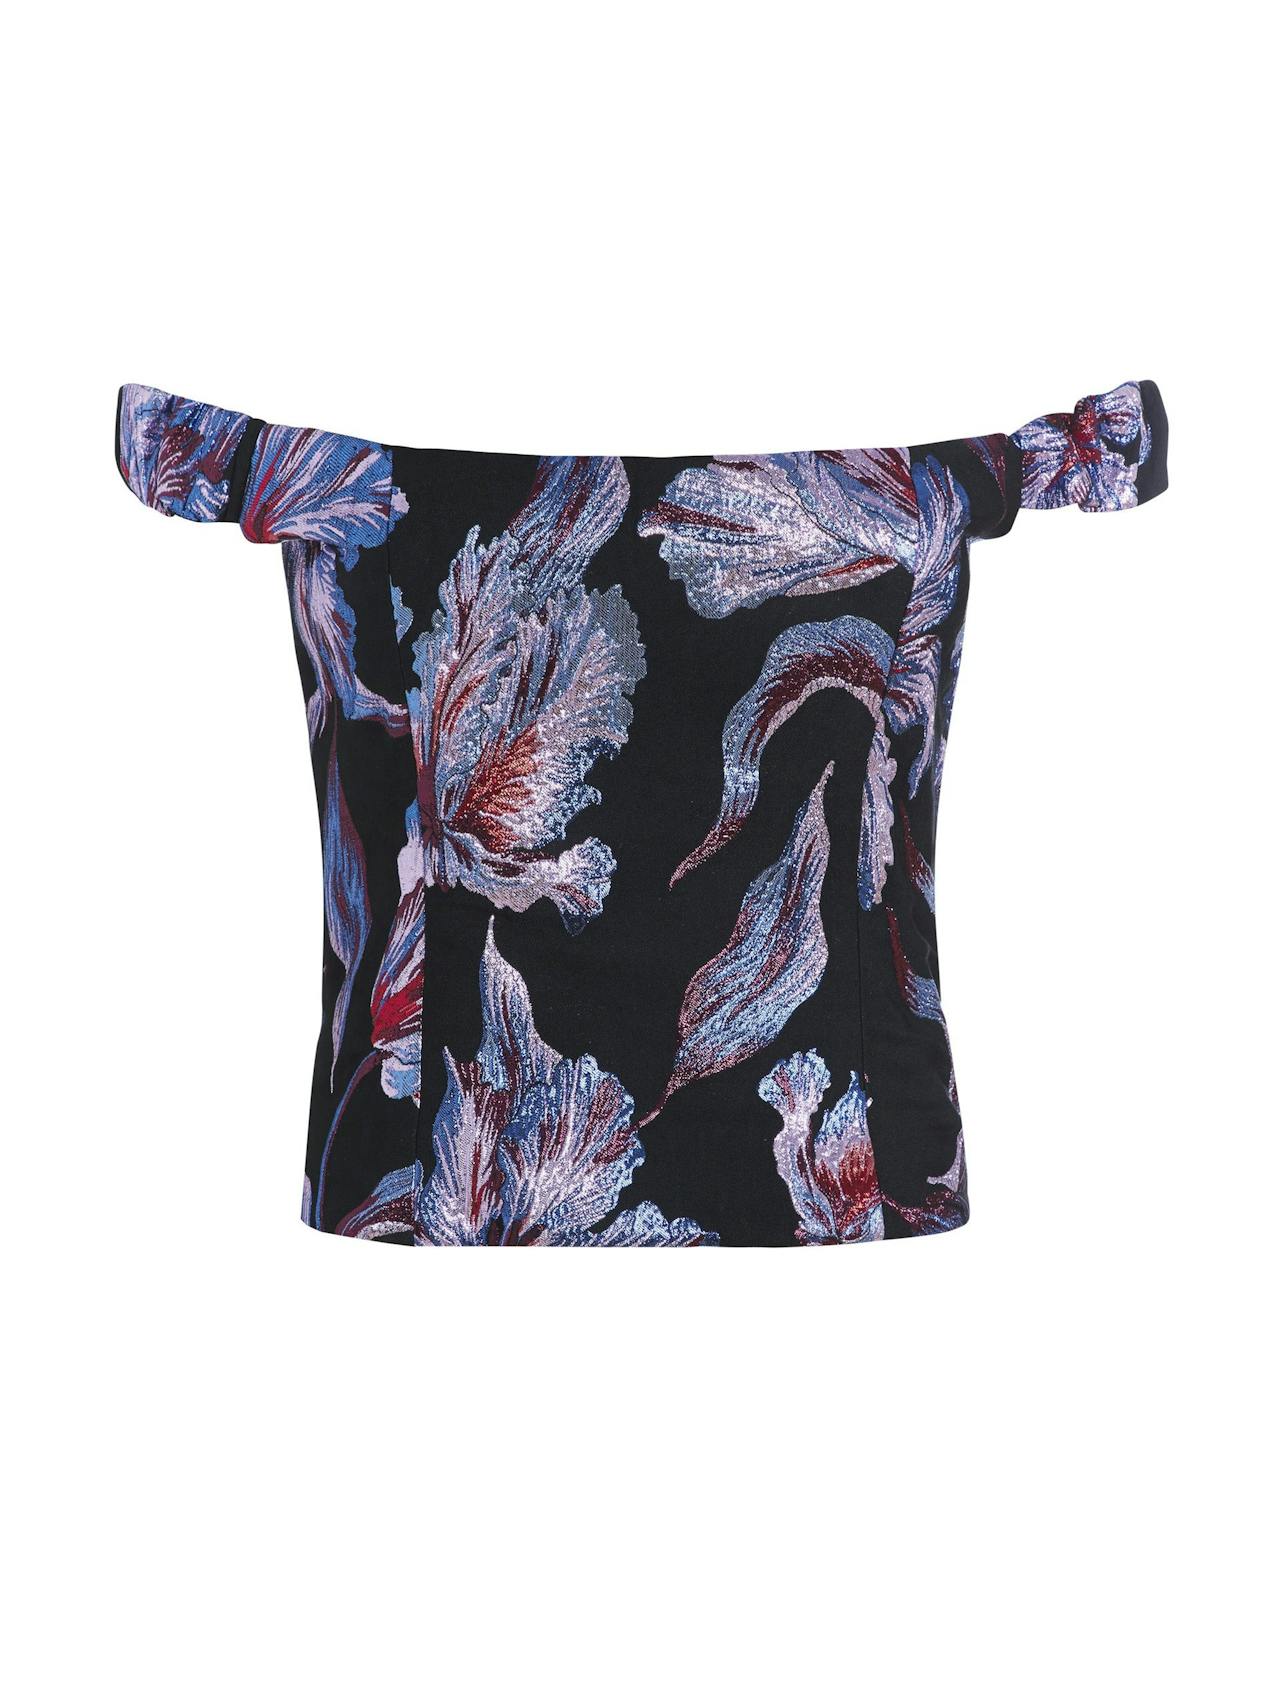 Metallic hibiscus brocade Hayworth corset top